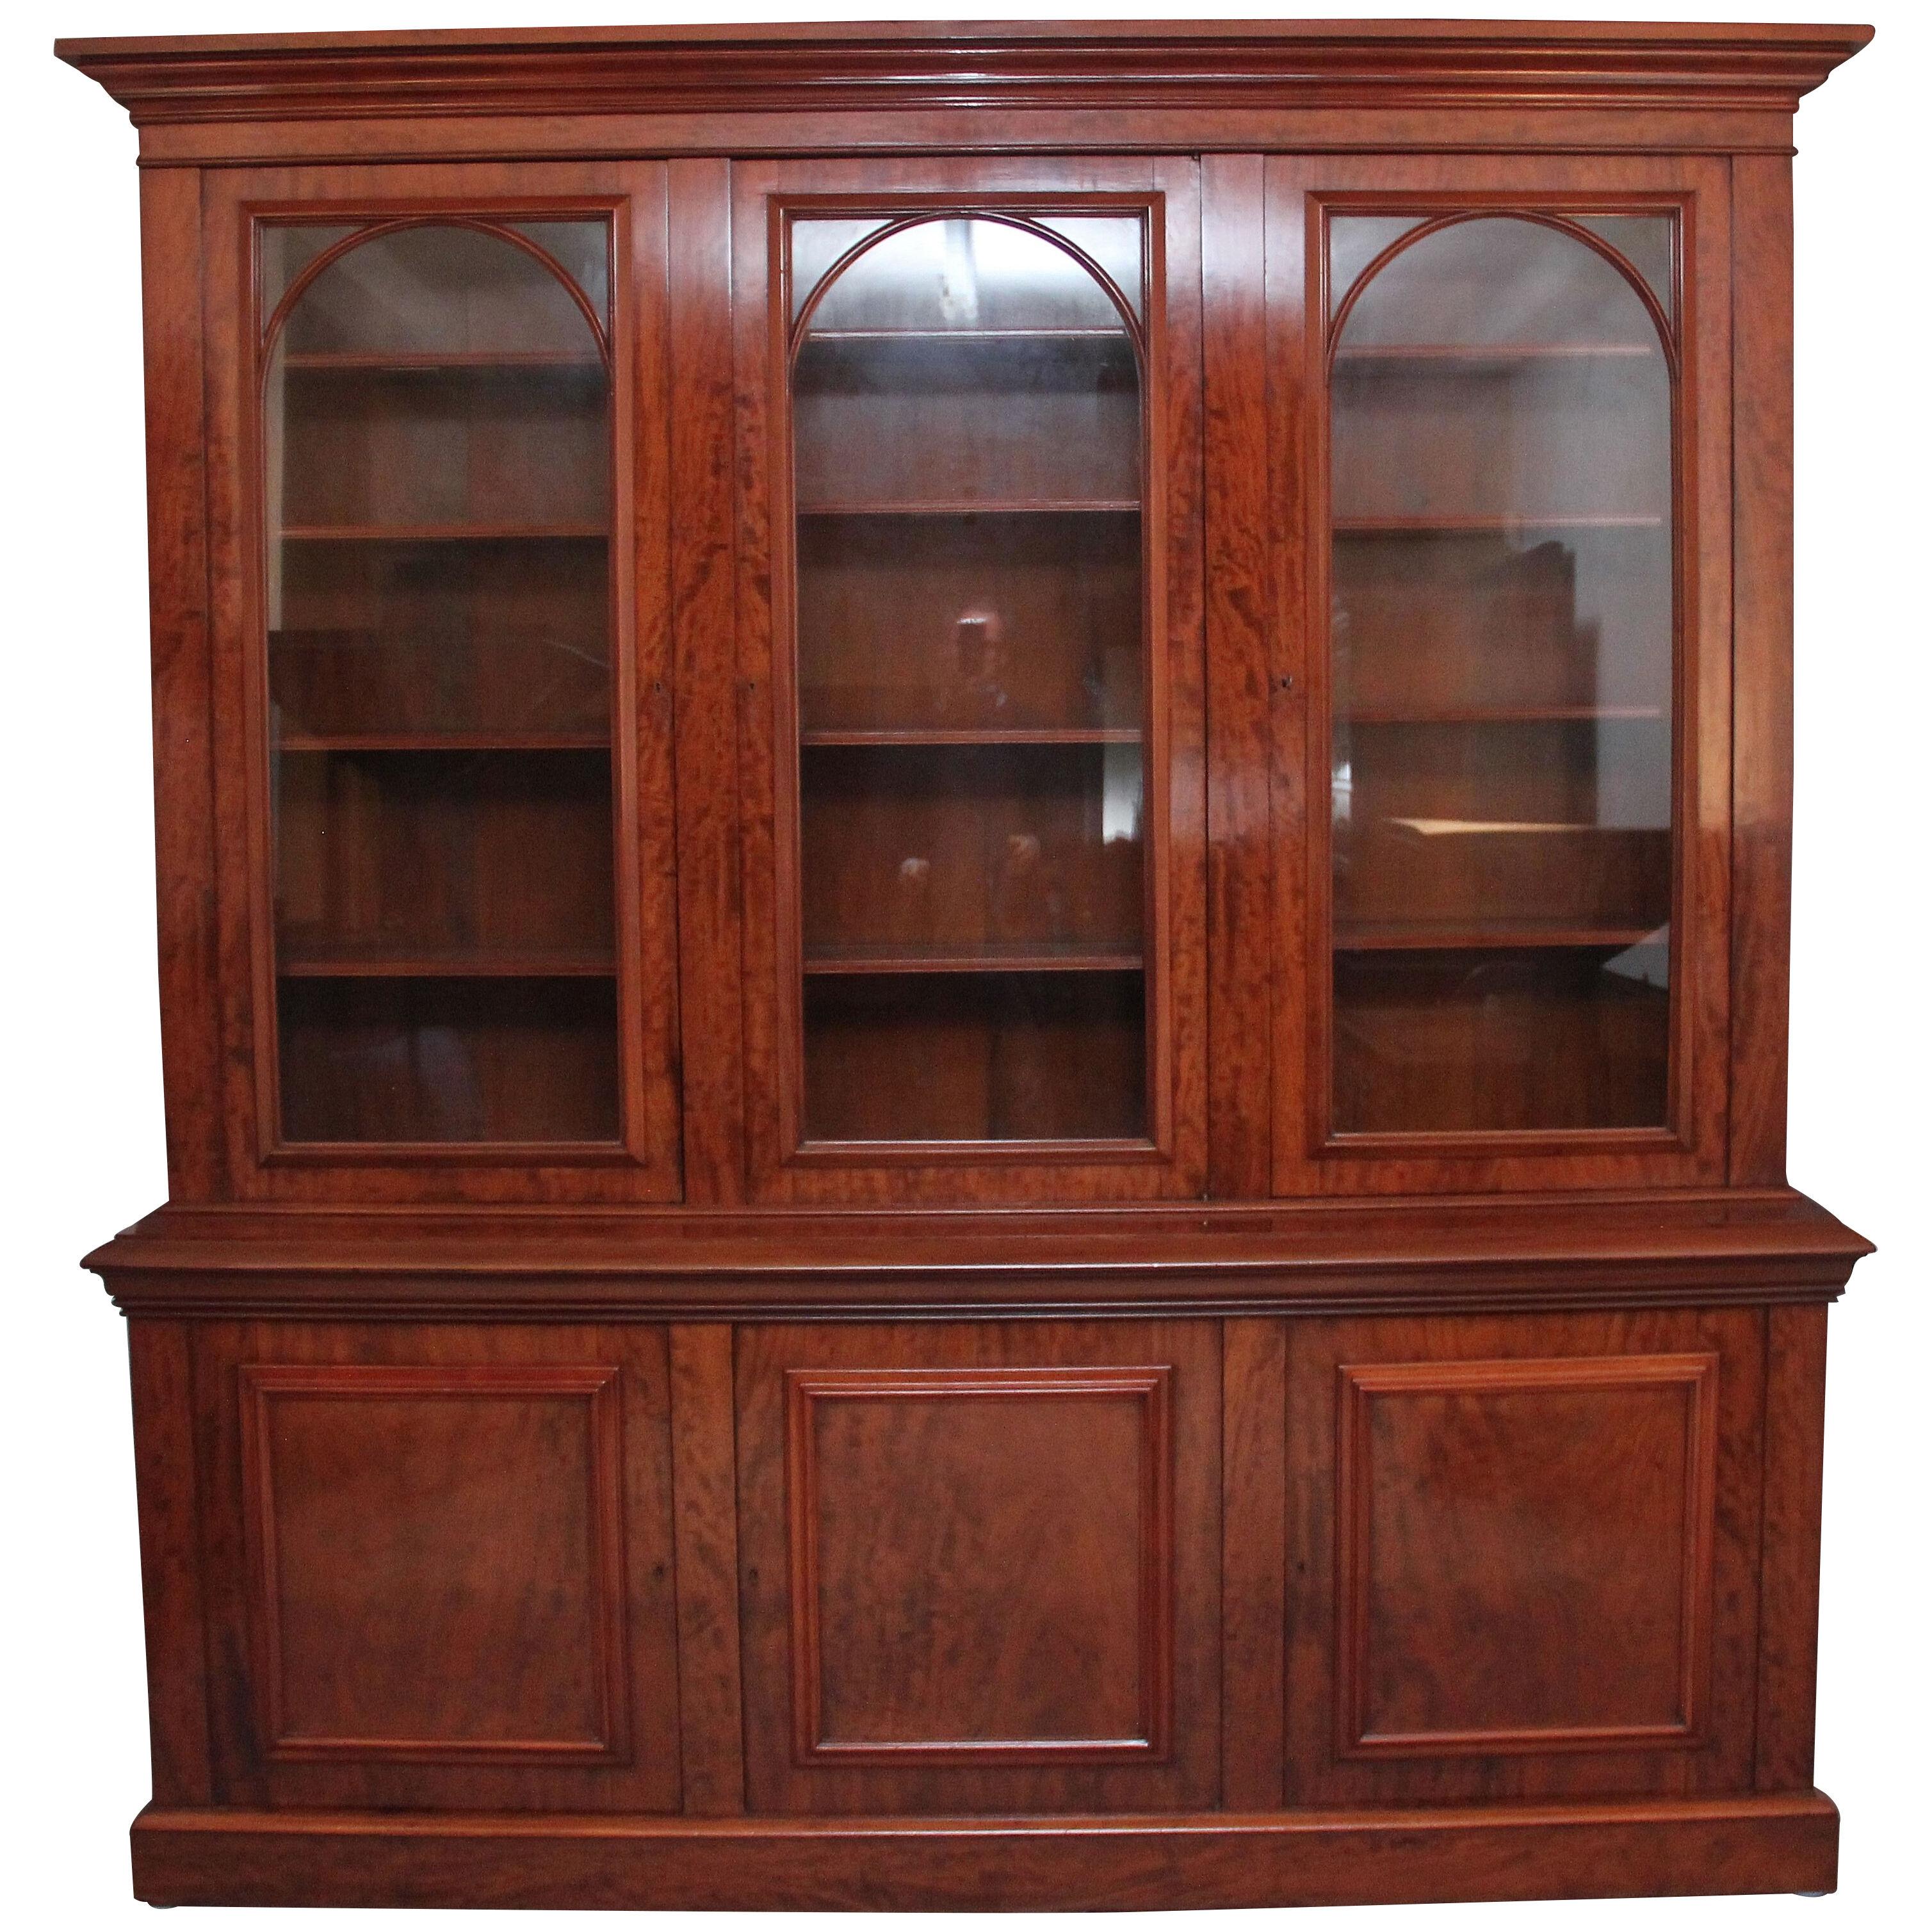 19th Century mahogany bookcase with a superb figured mahogany